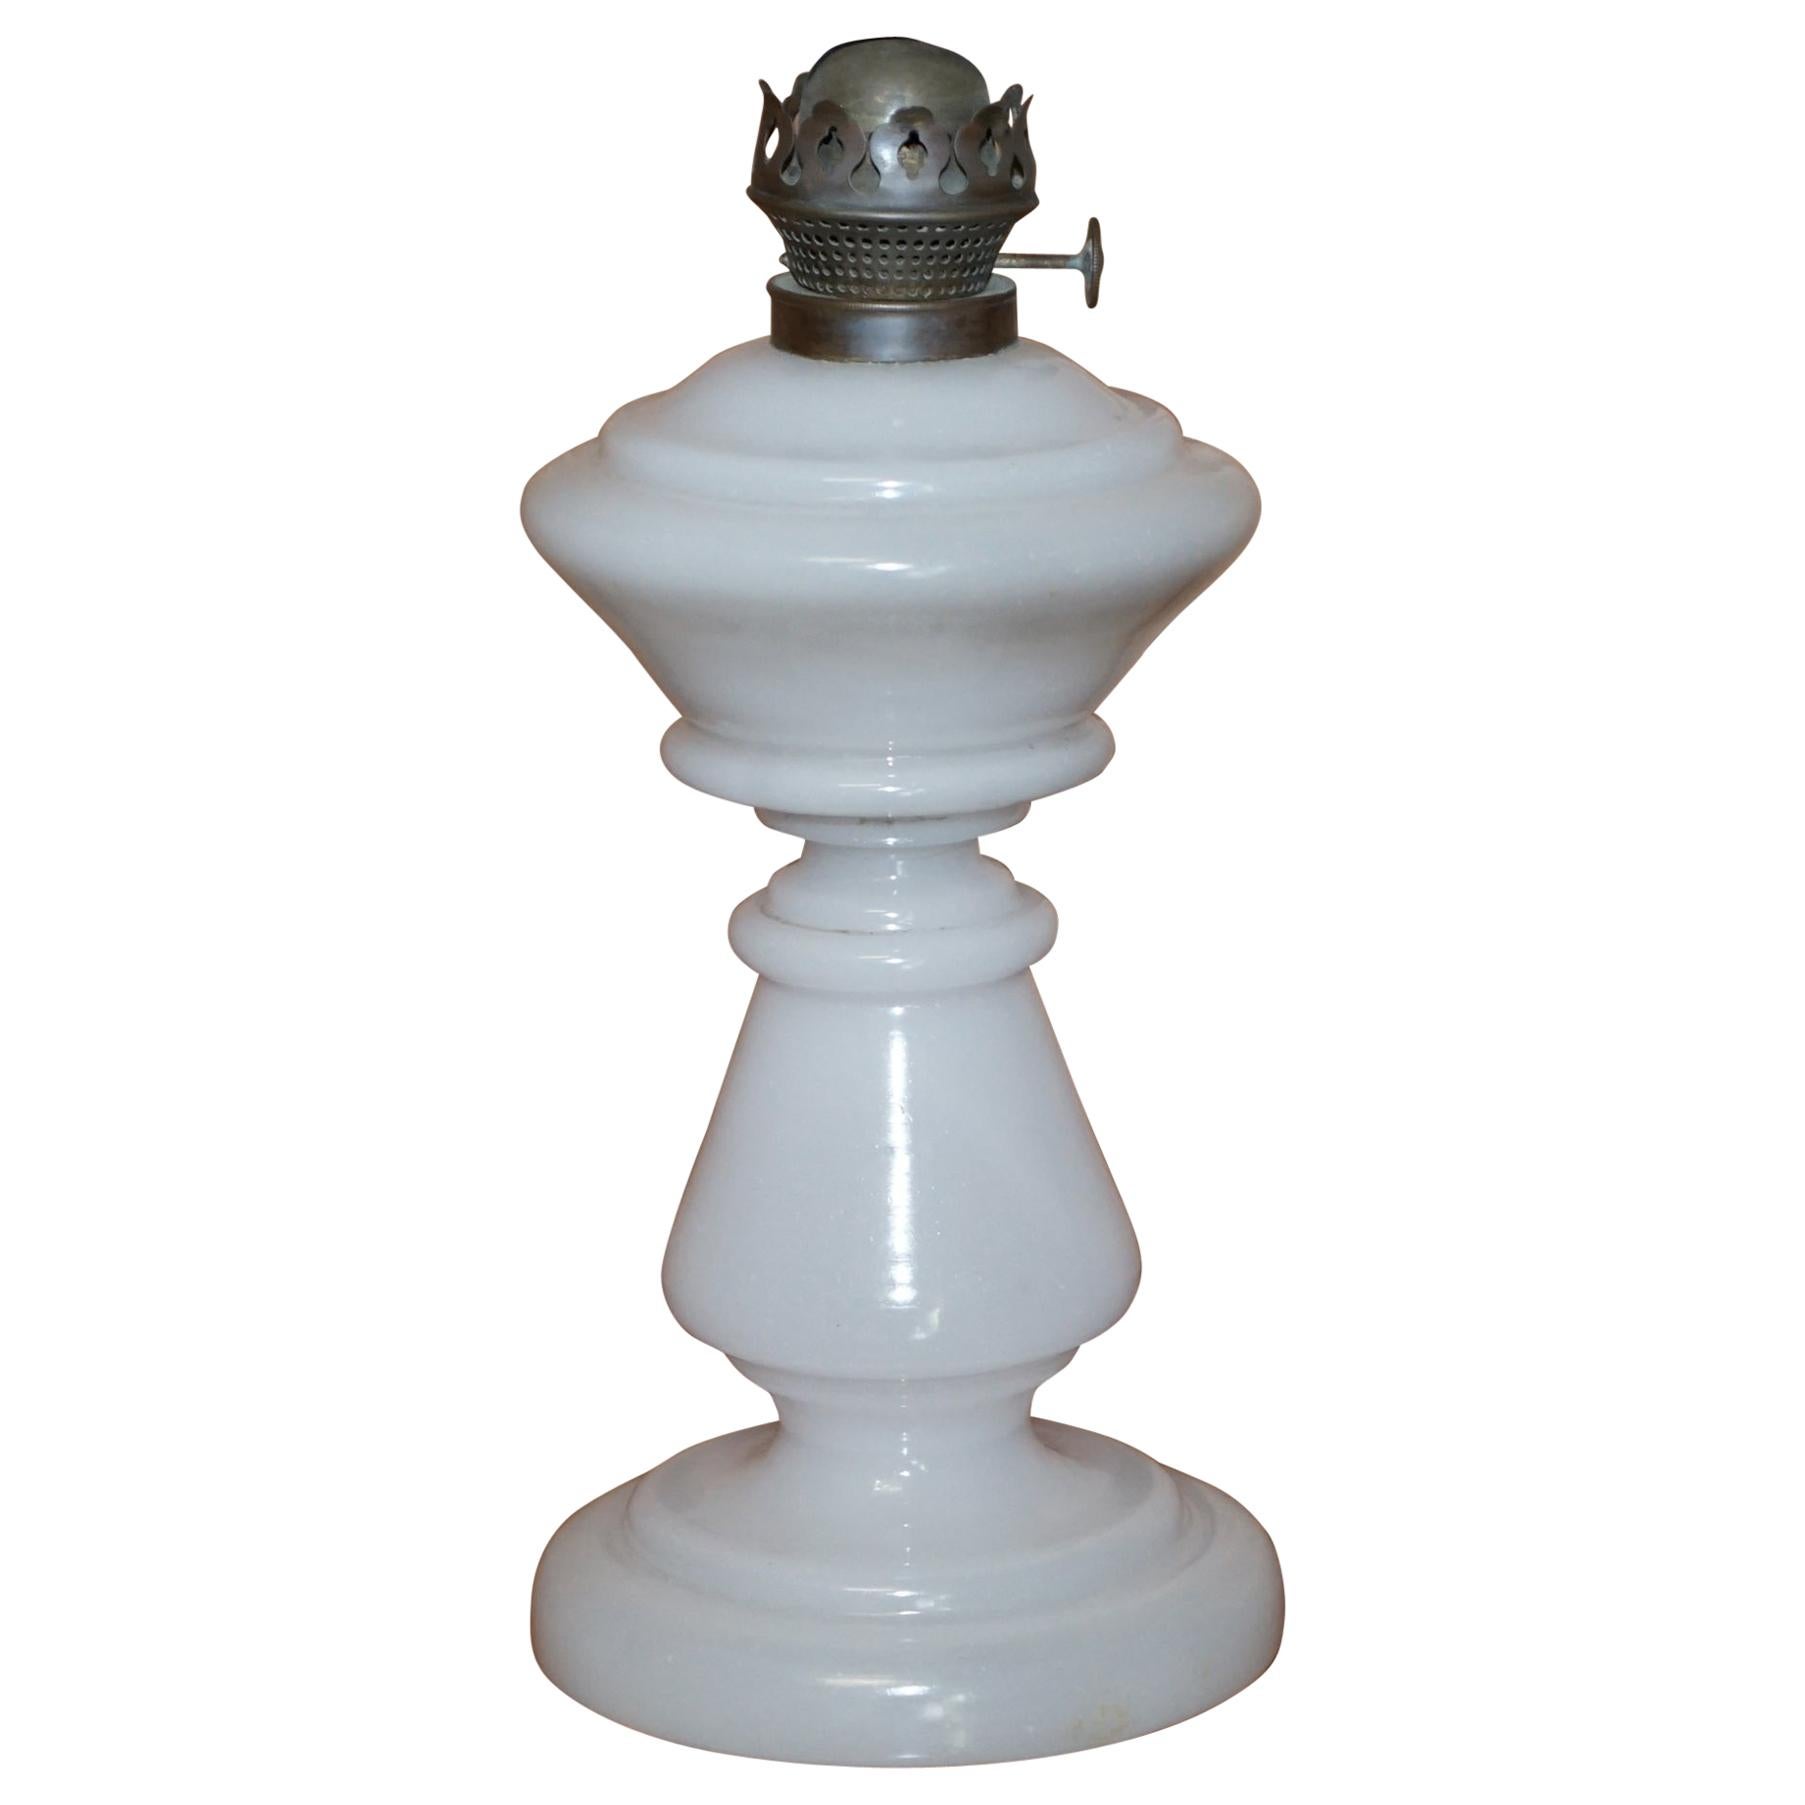 VICtorianische OPALINE-Glas-OIL-Lampenbügel mit liebem WEISS-Glas und ORIGINAL-FARBE